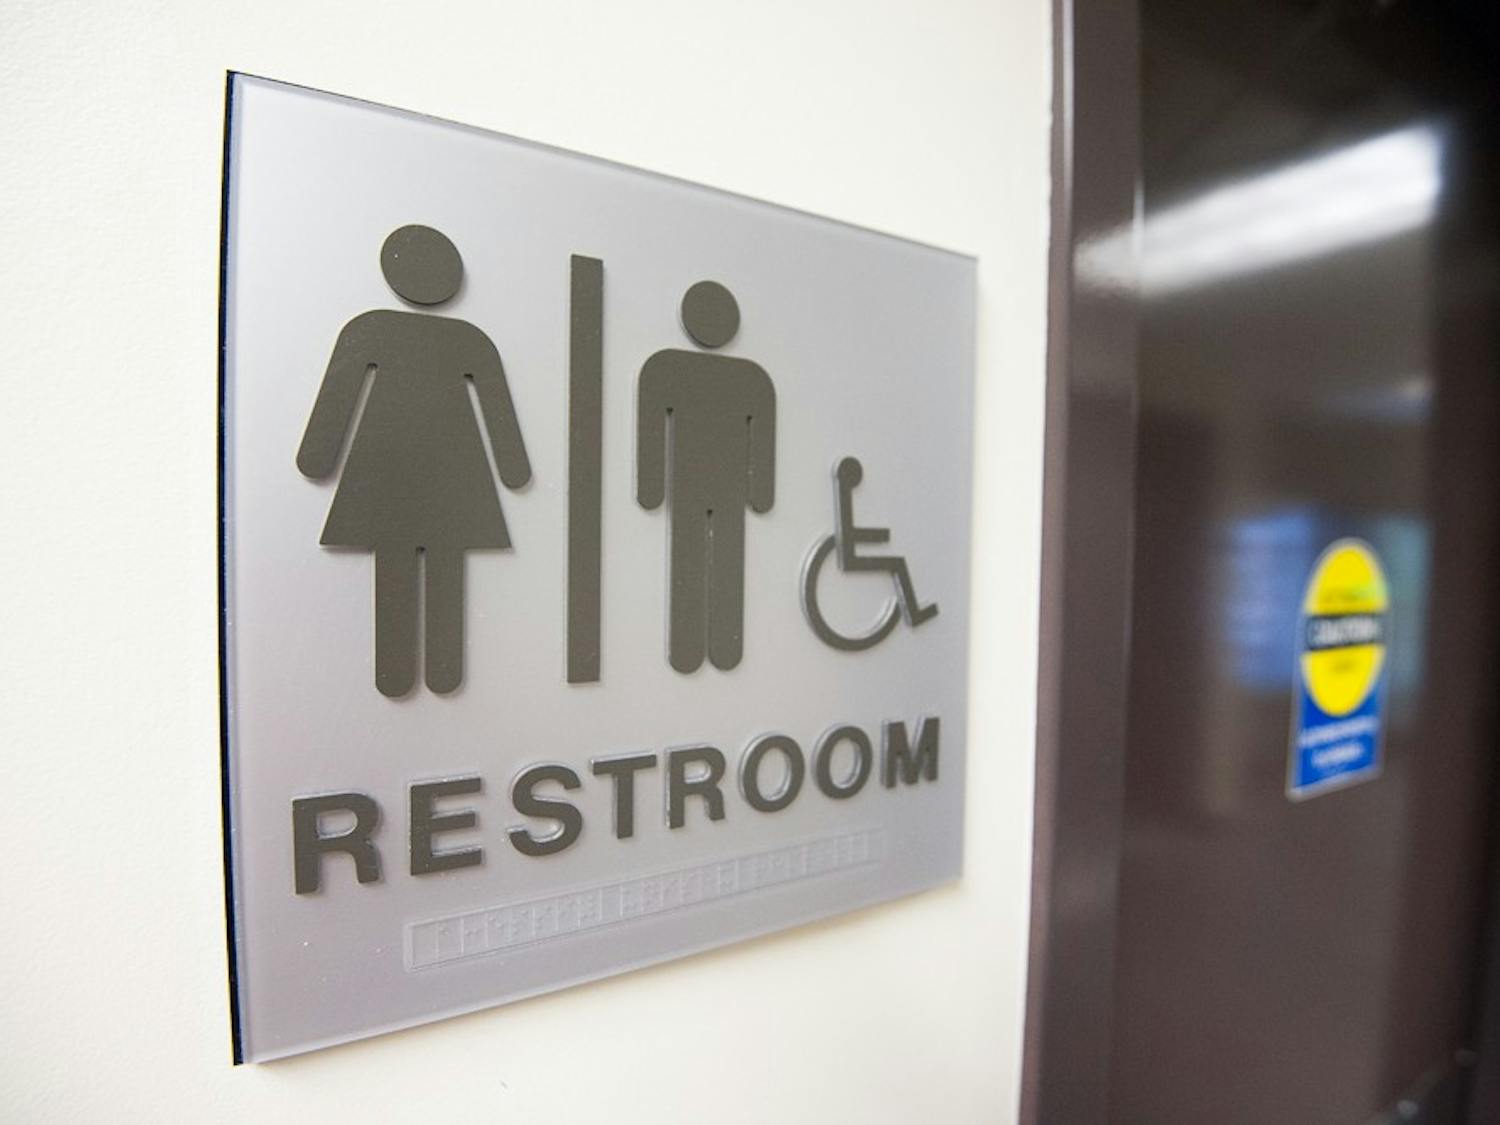 Gender-neutral restrooms